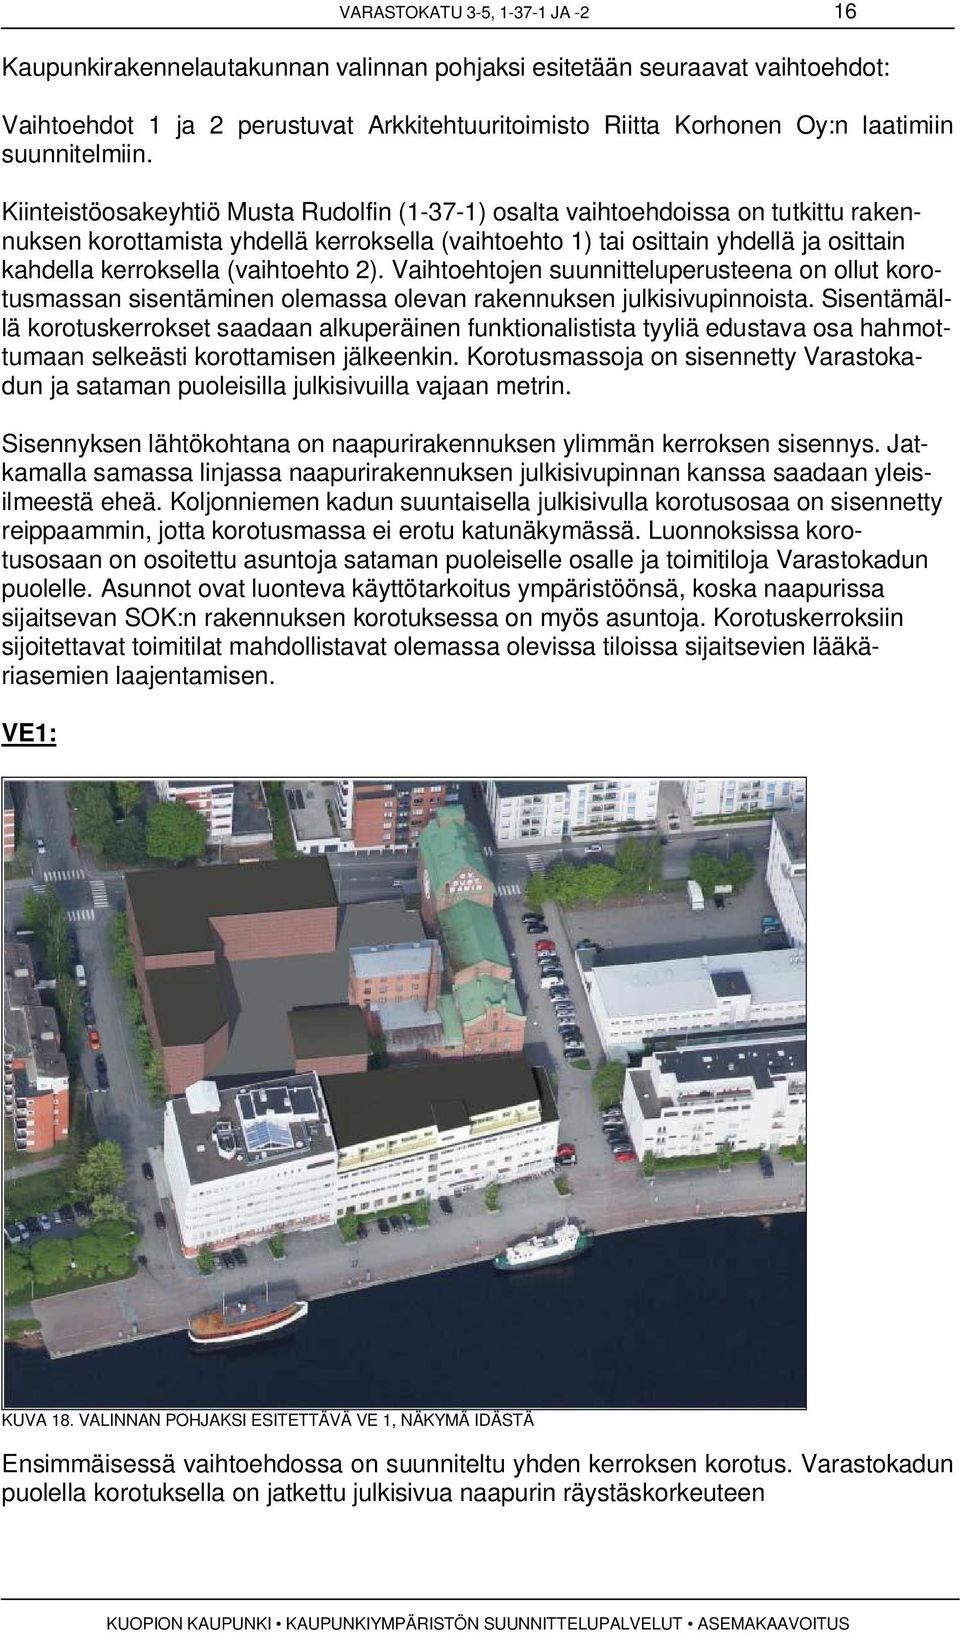 Kiinteistöosakeyhtiö Musta Rudolfin (1-37-1) osalta vaihtoehdoissa on tutkittu rakennuksen korottamista yhdellä kerroksella (vaihtoehto 1) tai osittain yhdellä ja osittain kahdella kerroksella